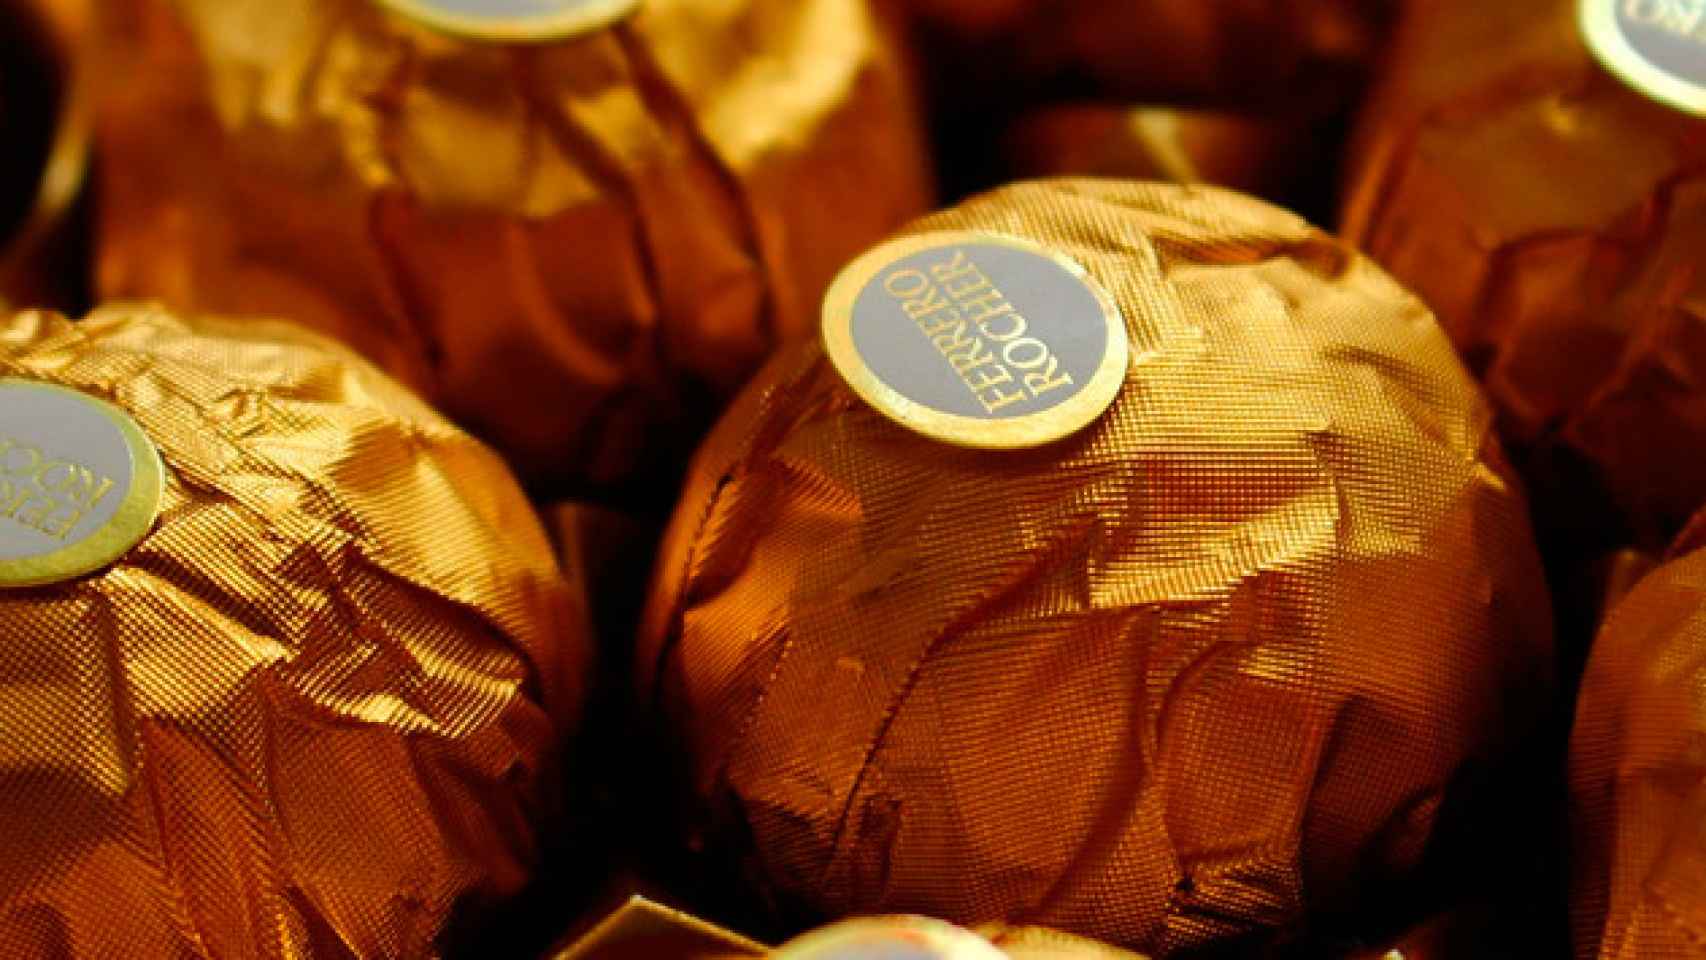 Unos bombones Ferrero Rocher